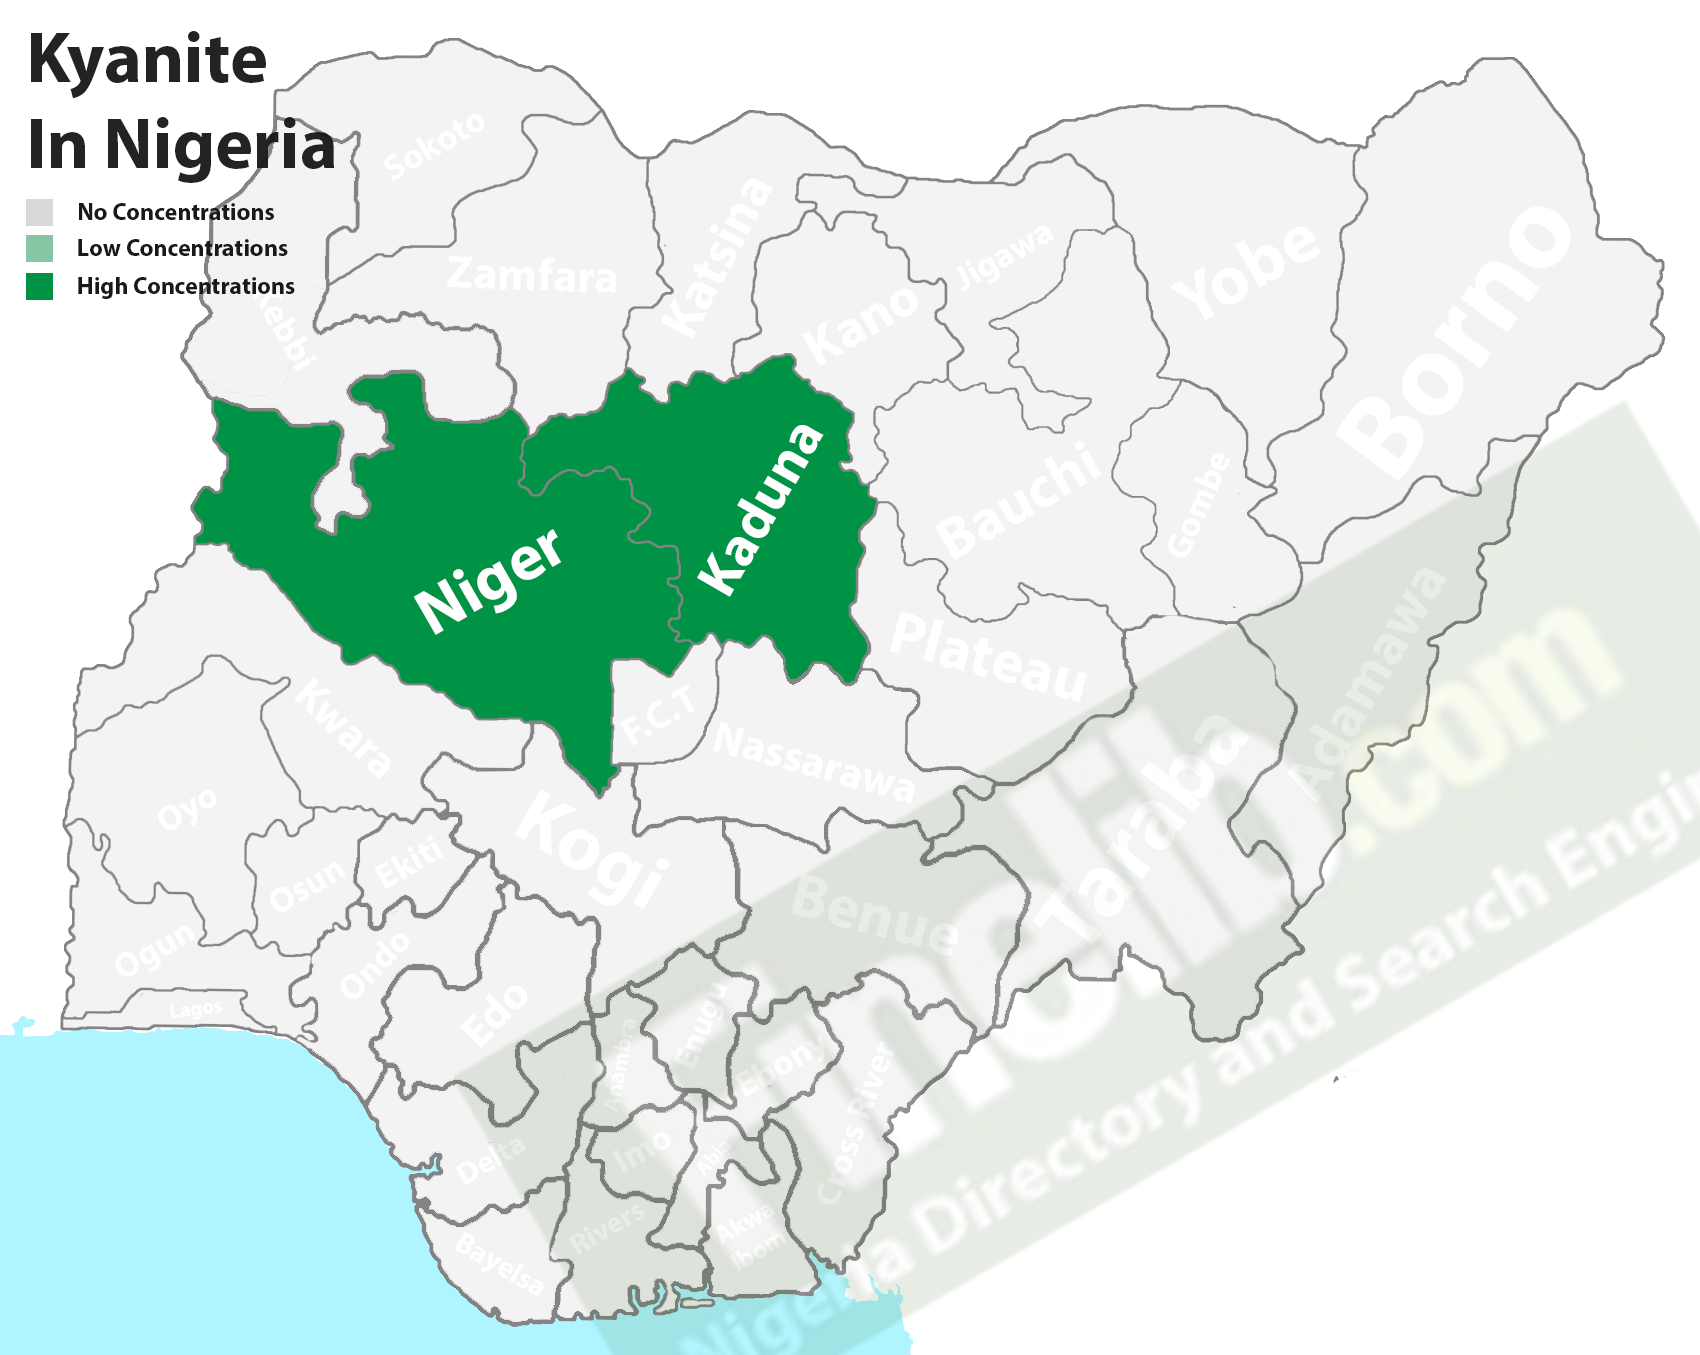 Kyanite natural mineral deposits in Nigeria